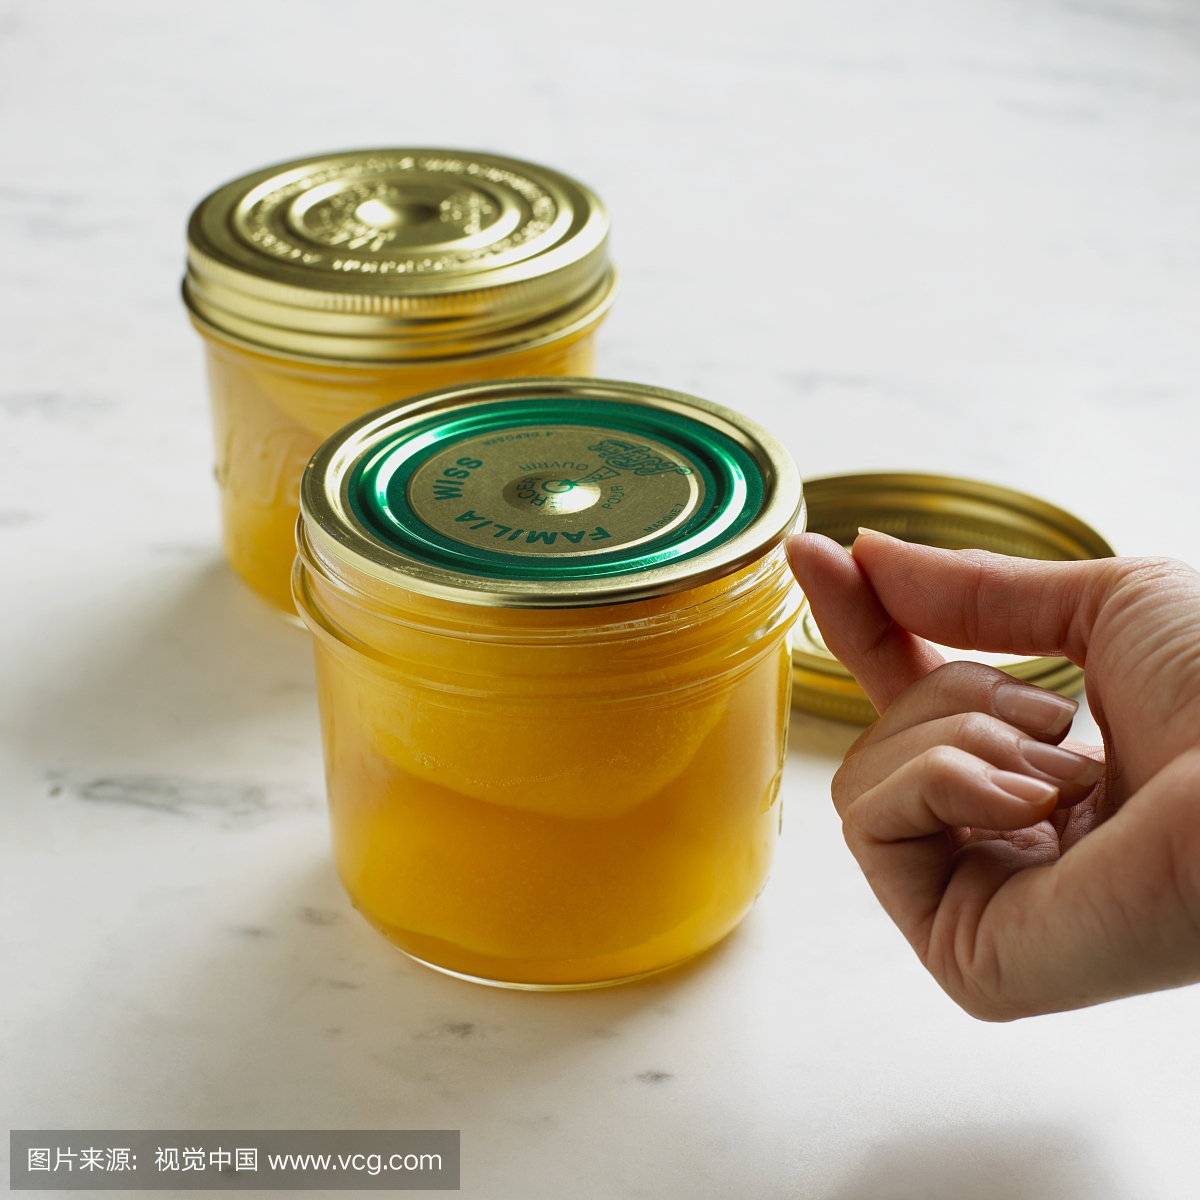 使用指甲测试盖子真空在一罐保存的桃子,特写